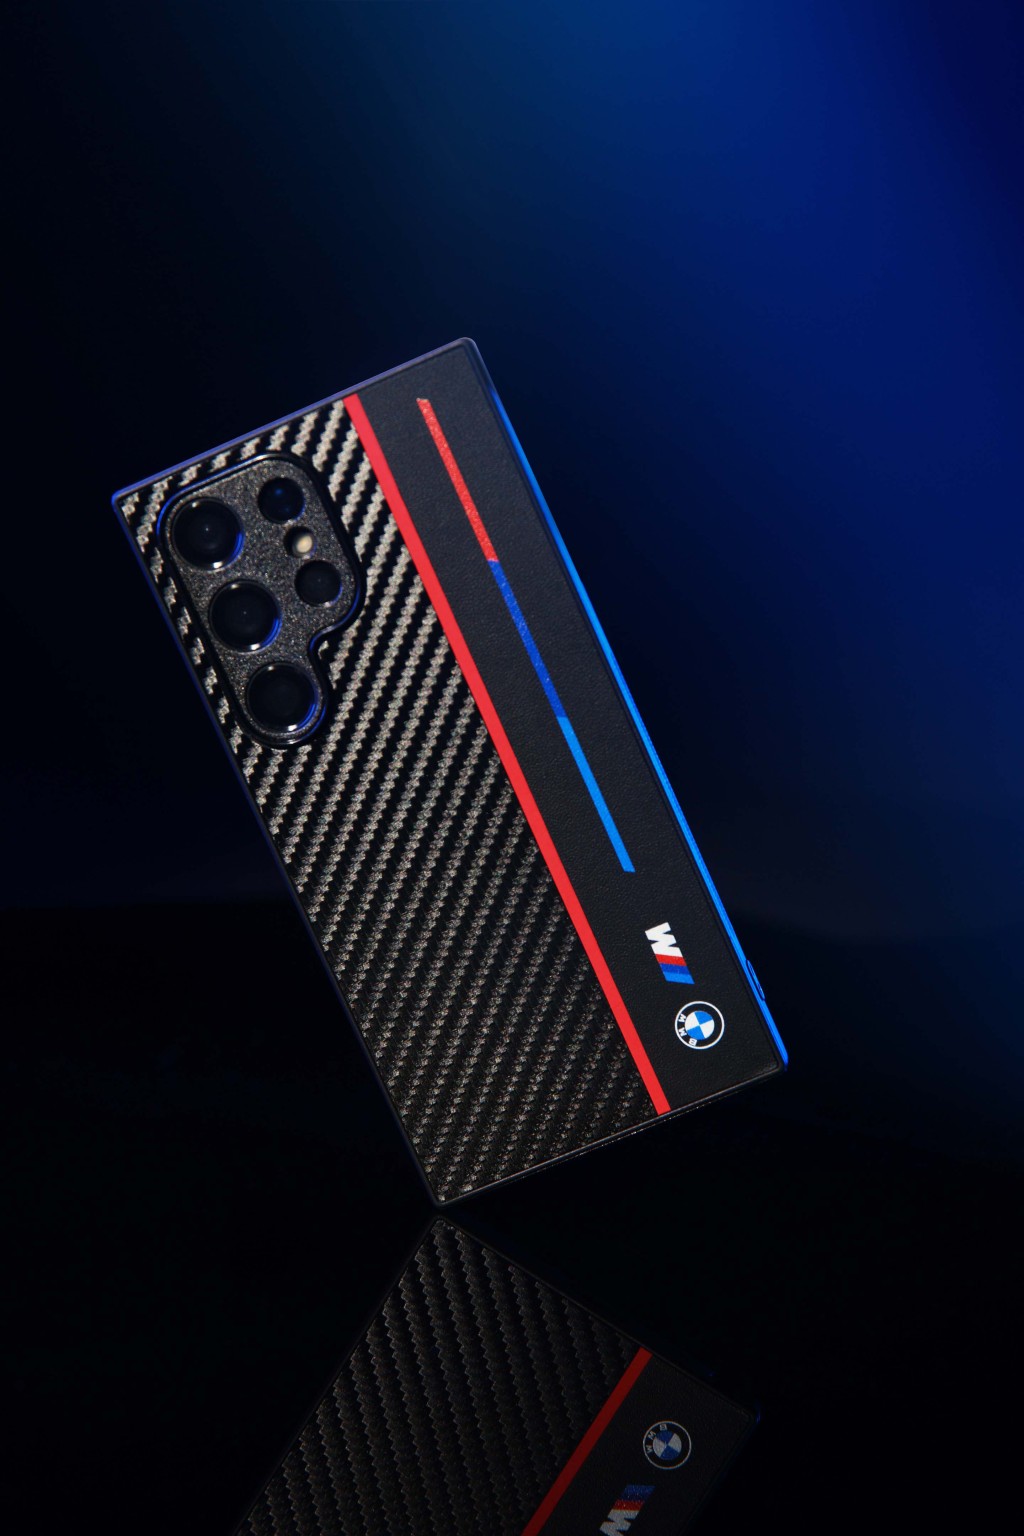 BMW M手機殼凸顯出BMW M的碳纖維配件設計。